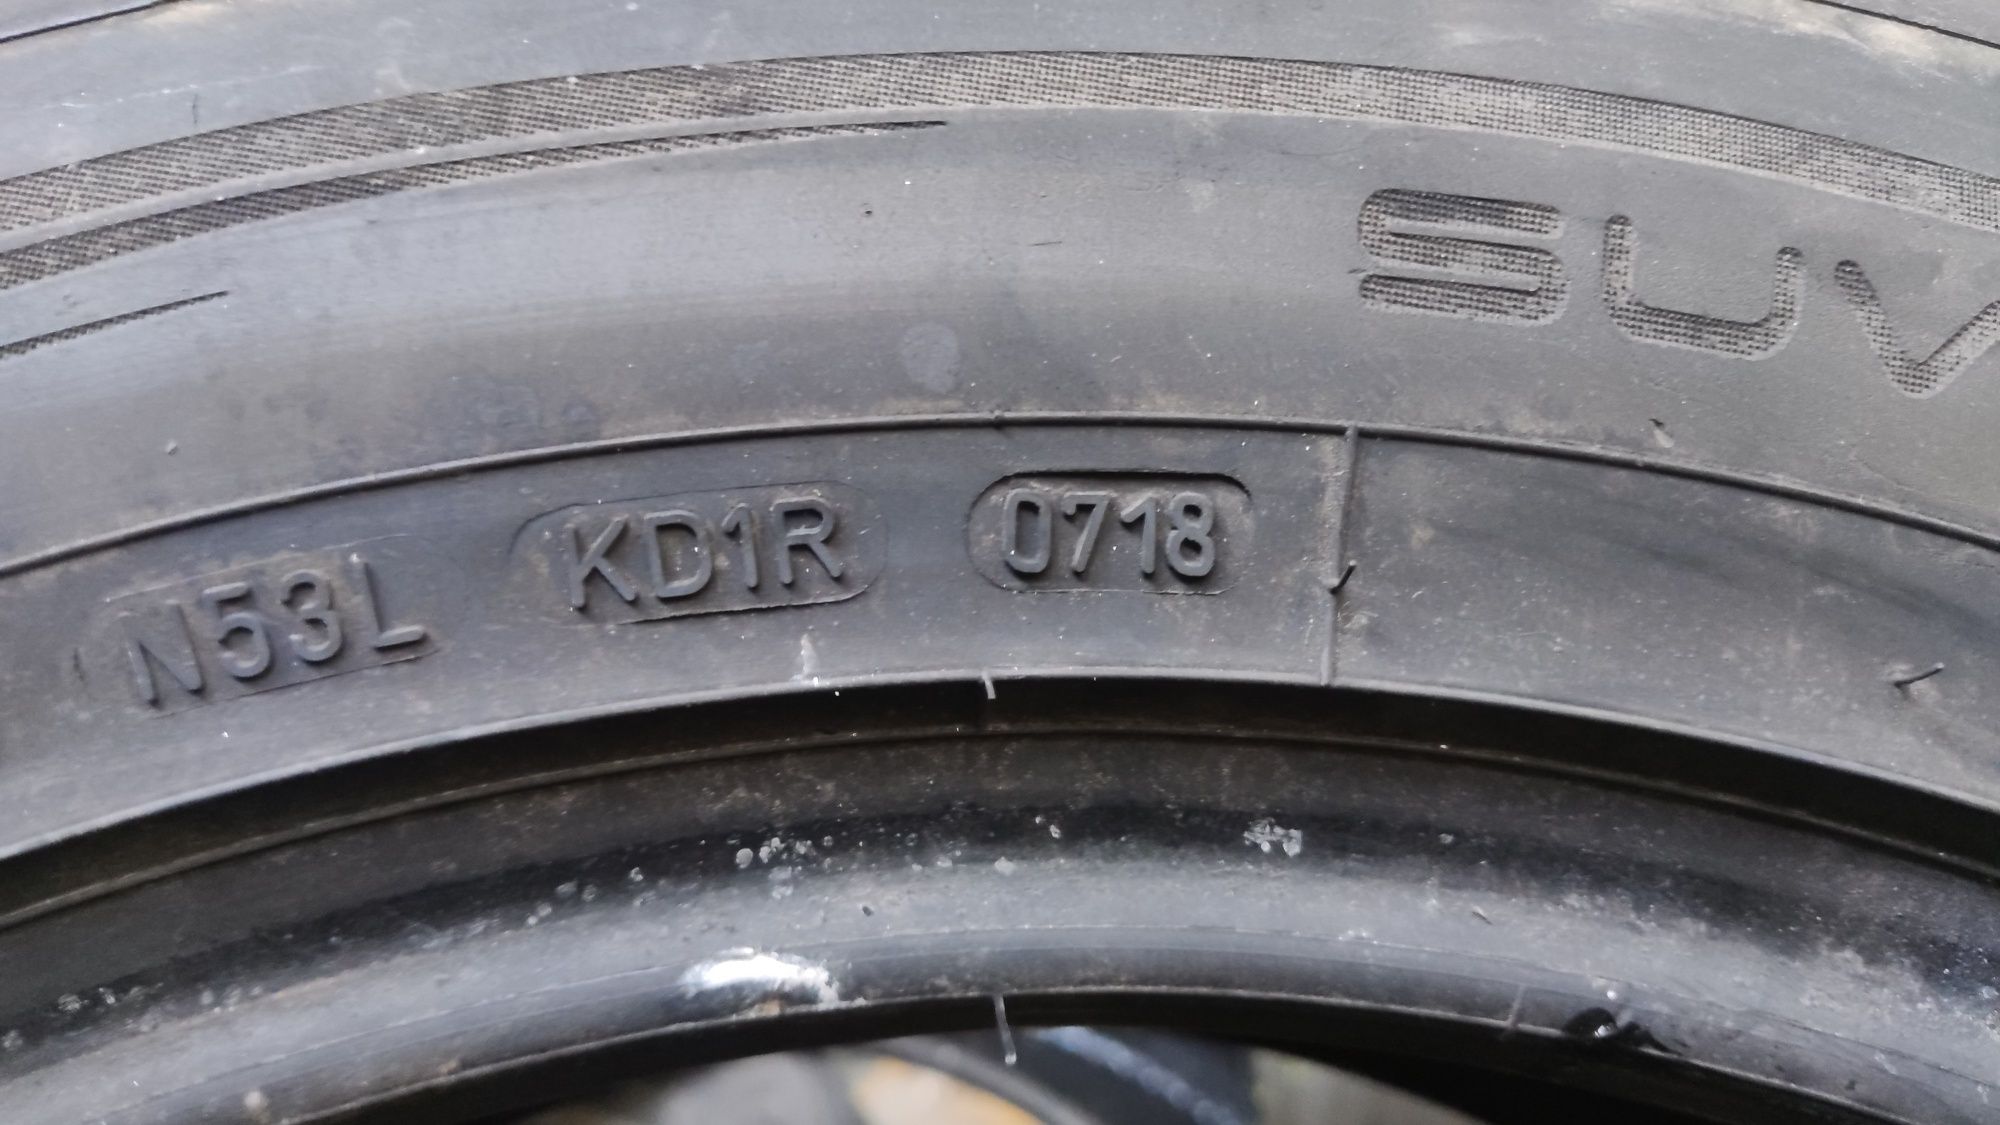 4бр летни гуми 235/55/18 Dunlop, разпродажна цена 150лв за 4бра
5.5mm